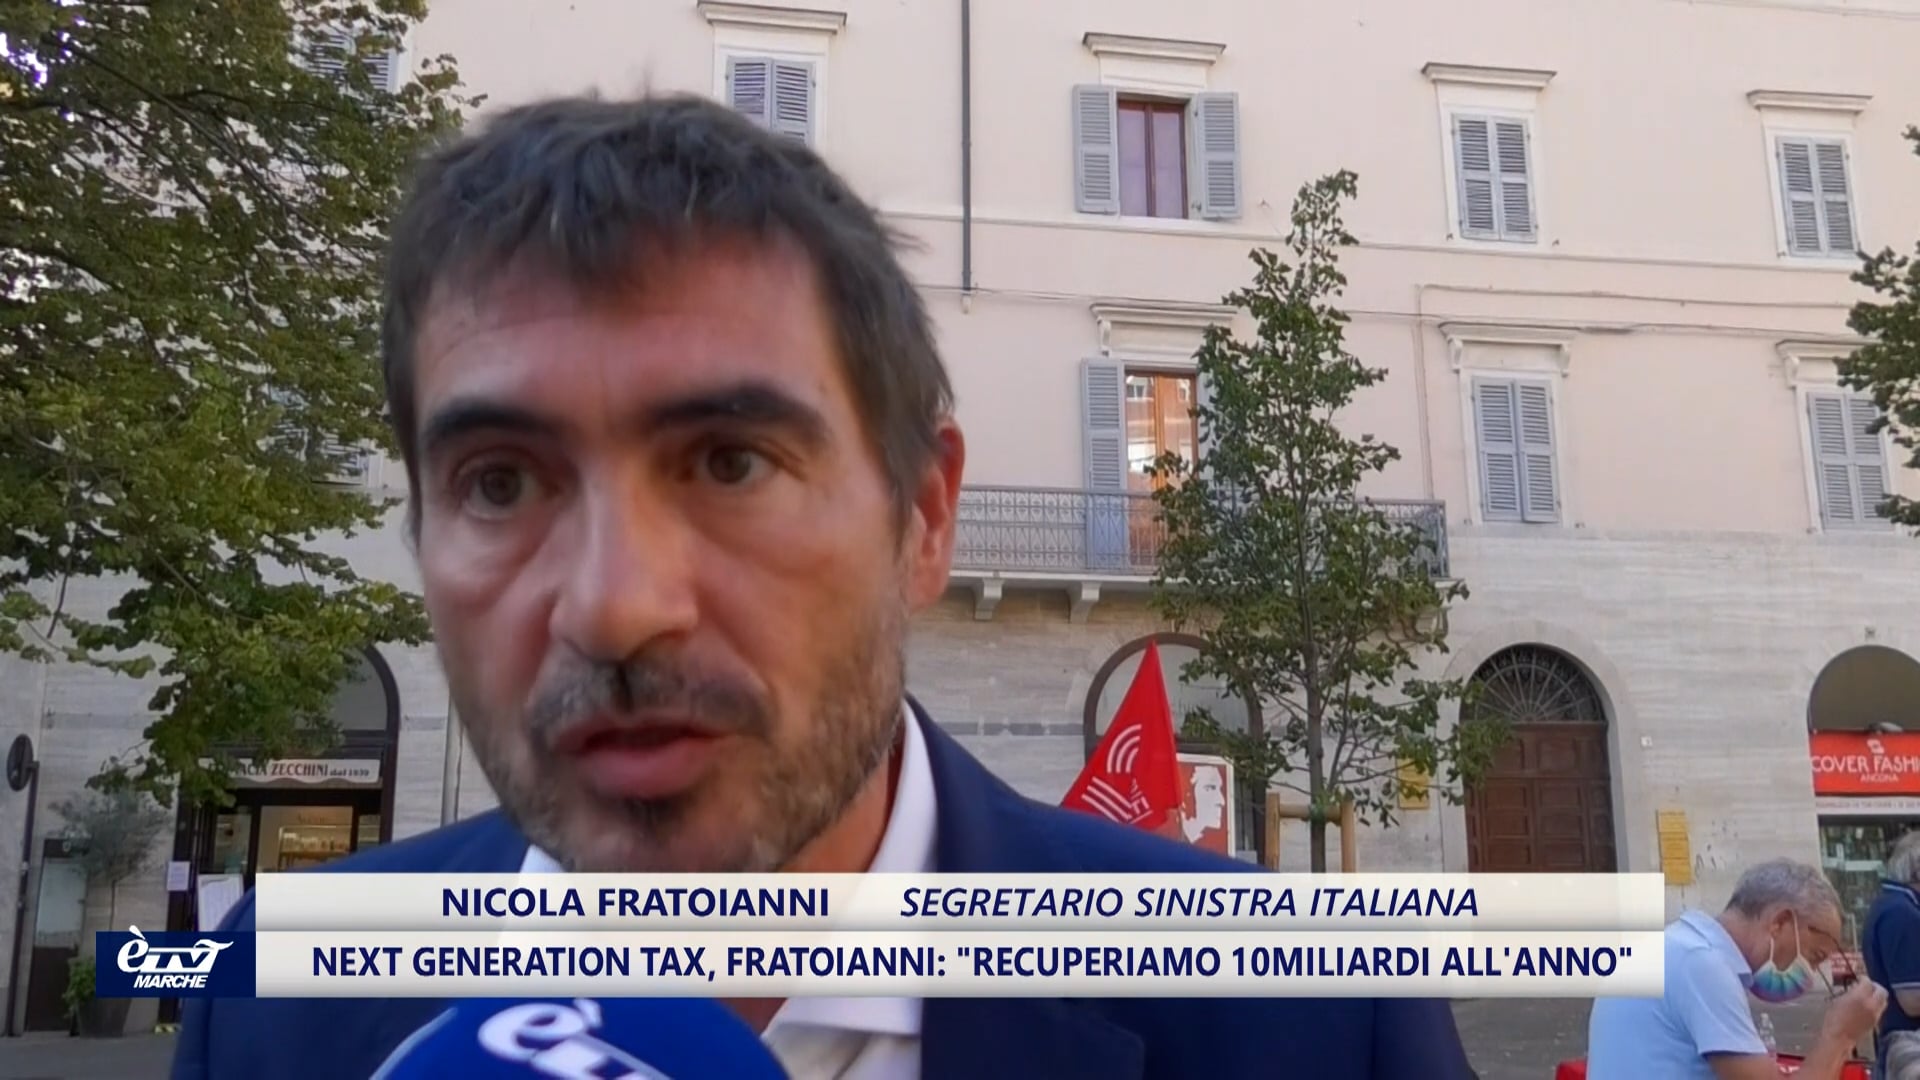 Next generation tax, Fratoianni: “Recuperiamo 10miliardi all'anno”